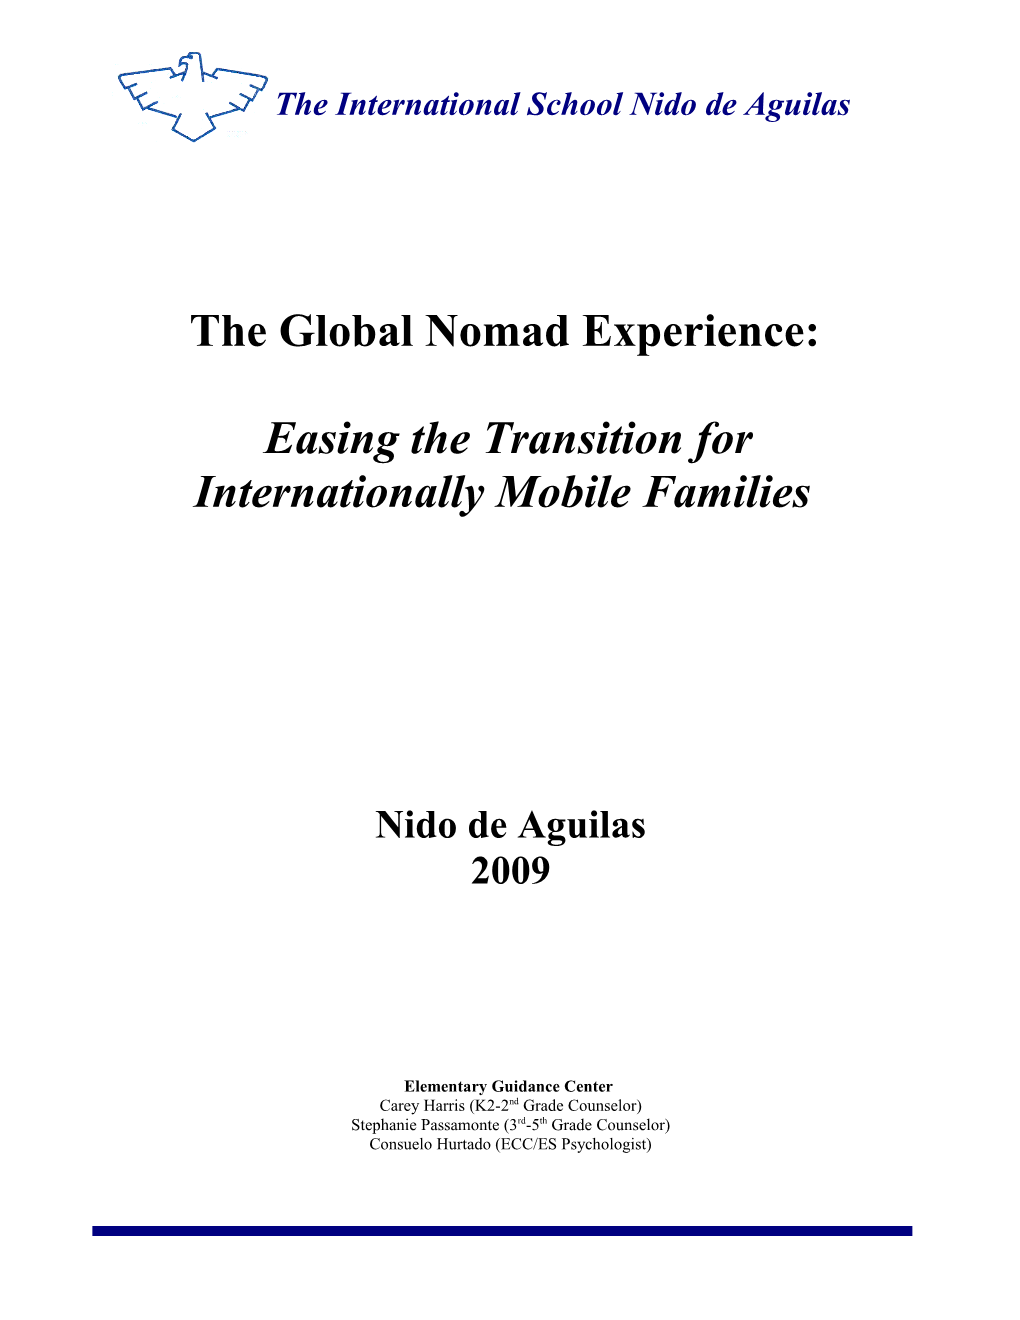 Internationally Mobile Children at ASA